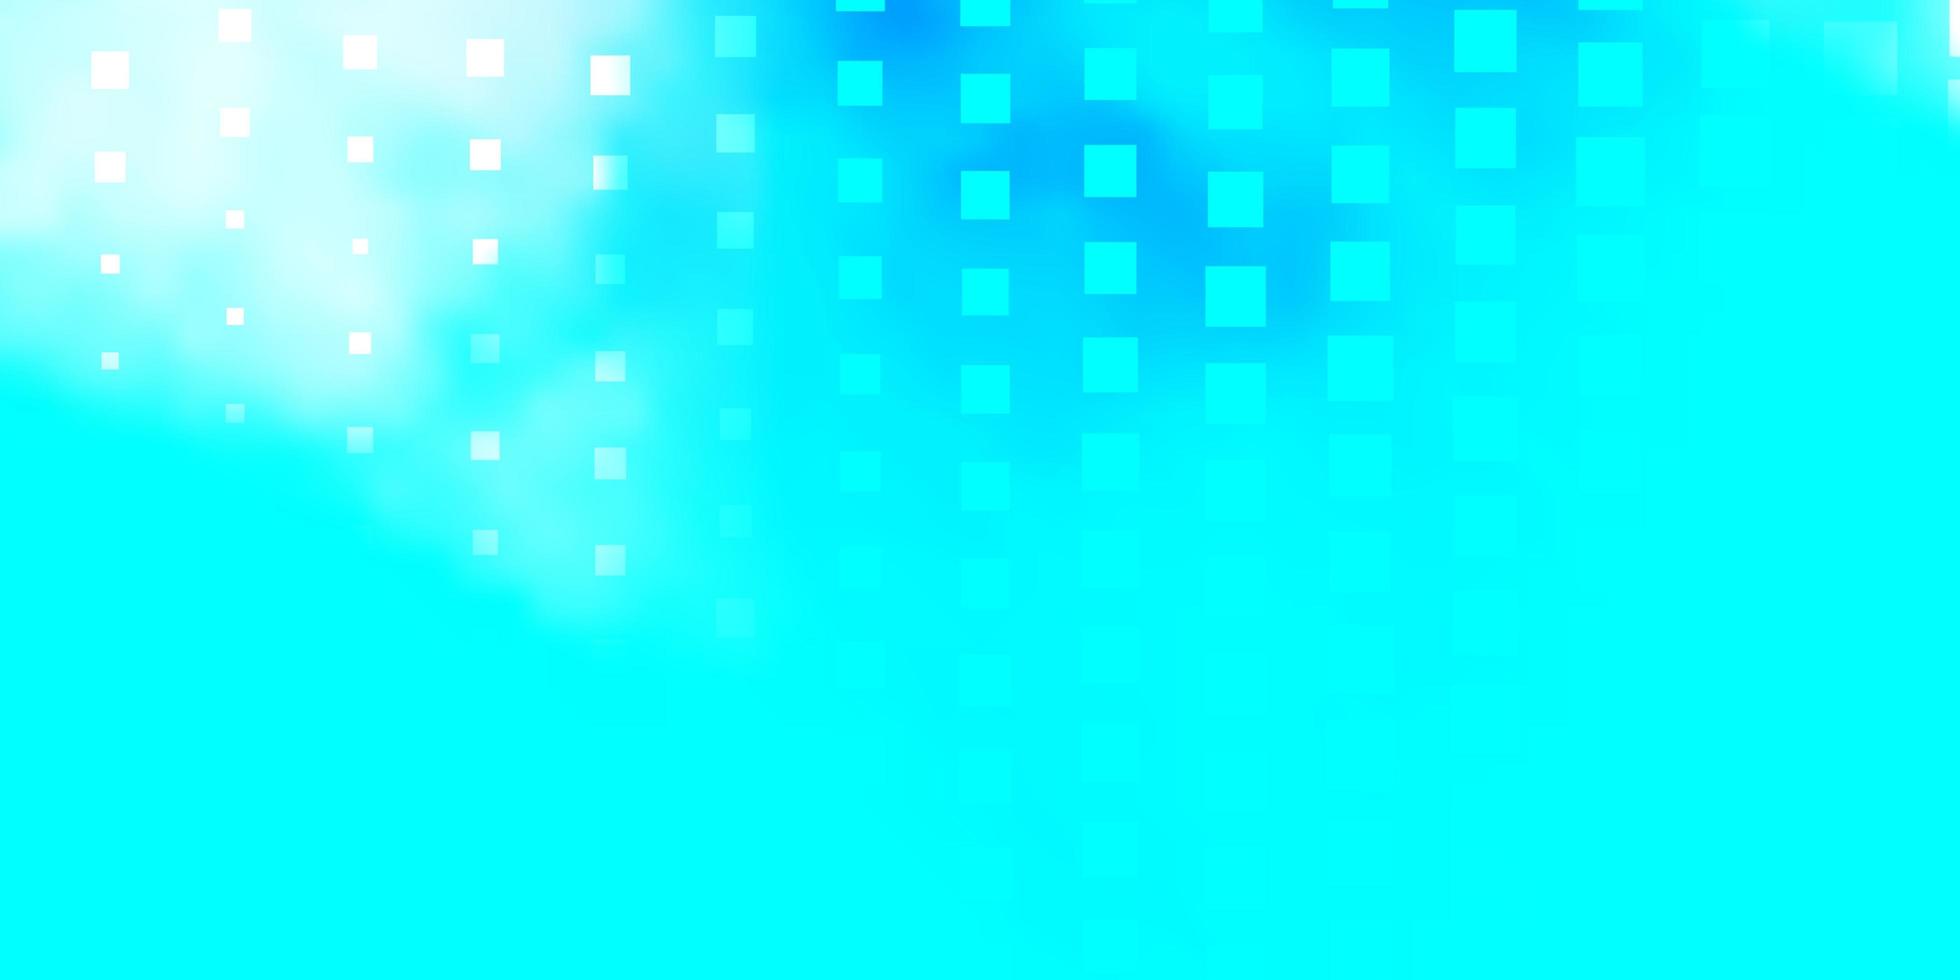 ljusblå vektormall med rektanglar. färgglad illustration med lutningsrektanglar och rutor. mönster för reklam, annonser. vektor